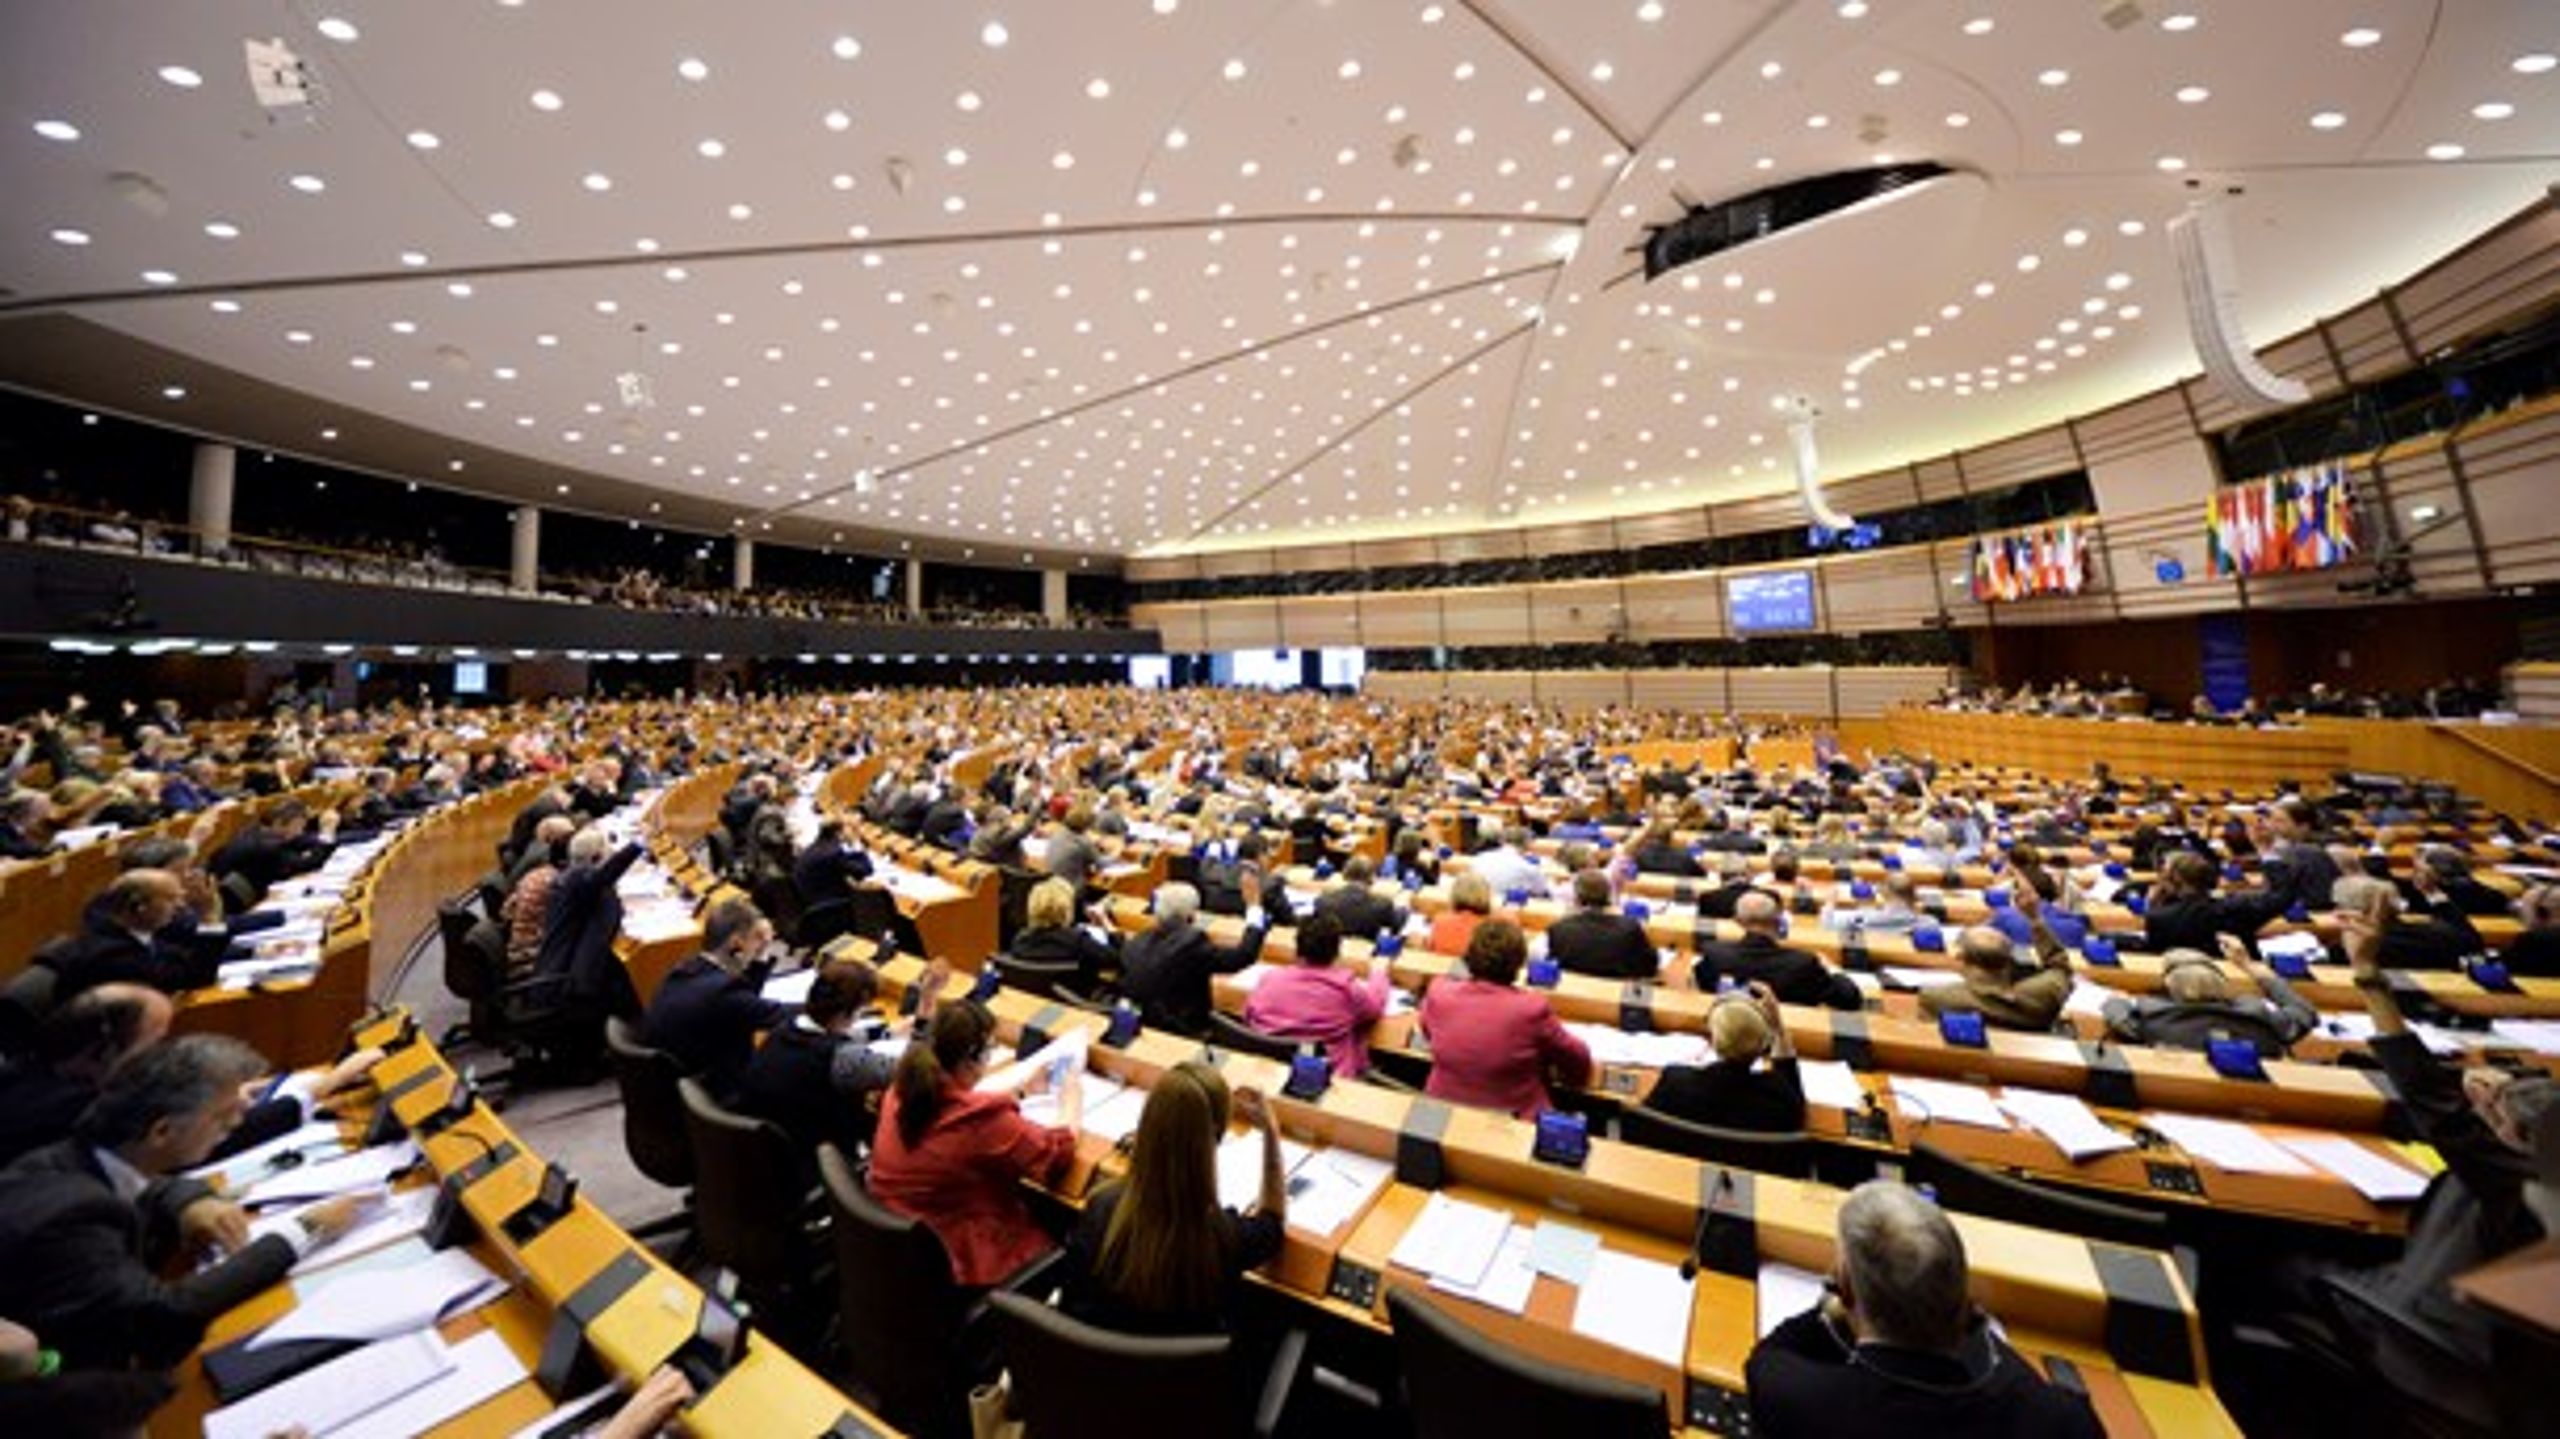 EU's parlamentarikere lobbyes heftigt fra mange sider, før de går til afstemning i plenarsalen.